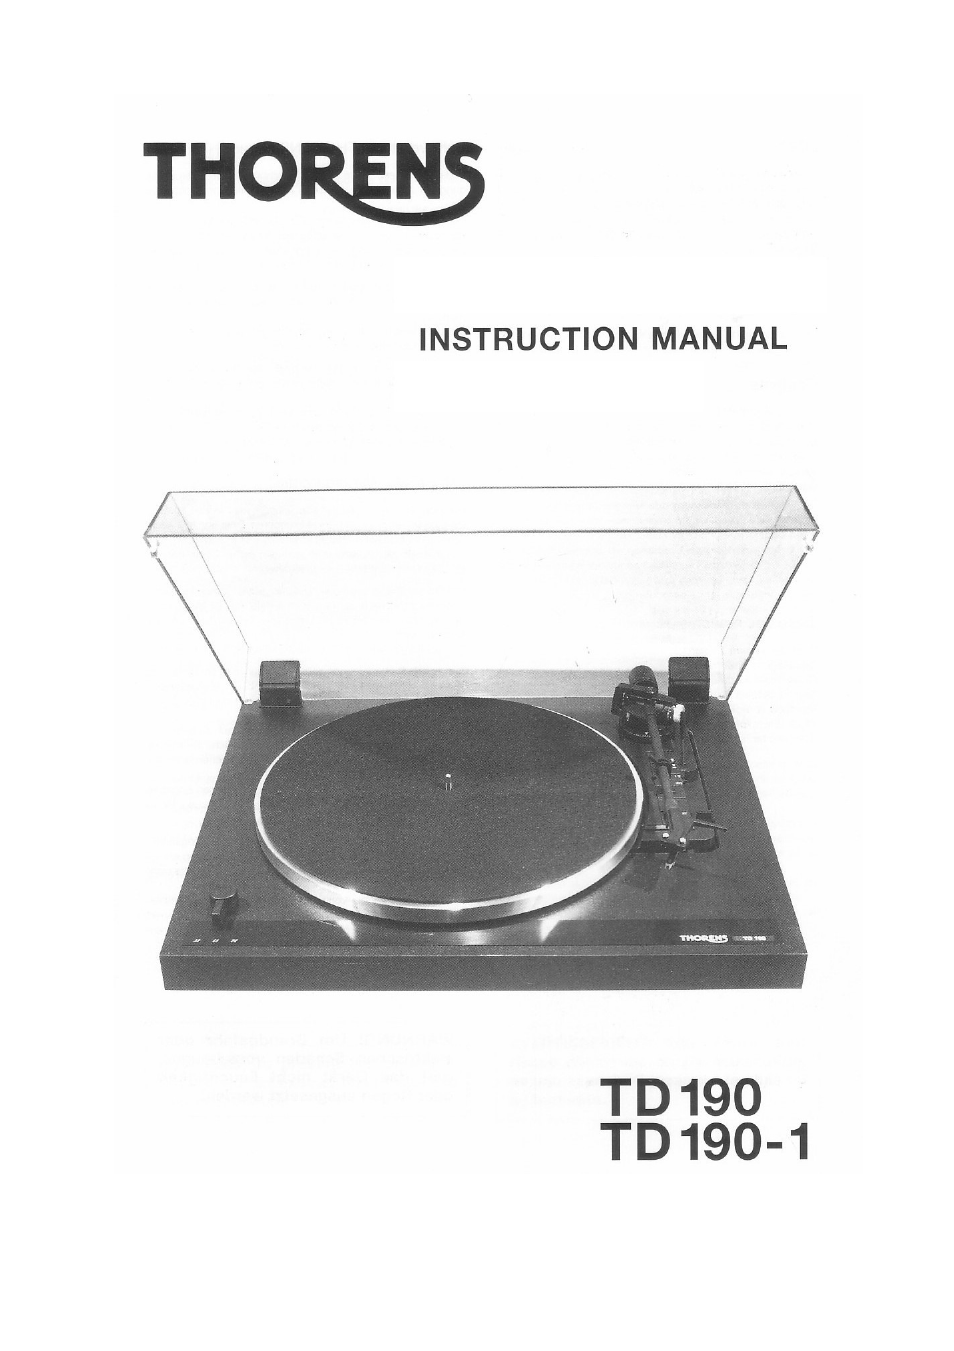 TD 190-1